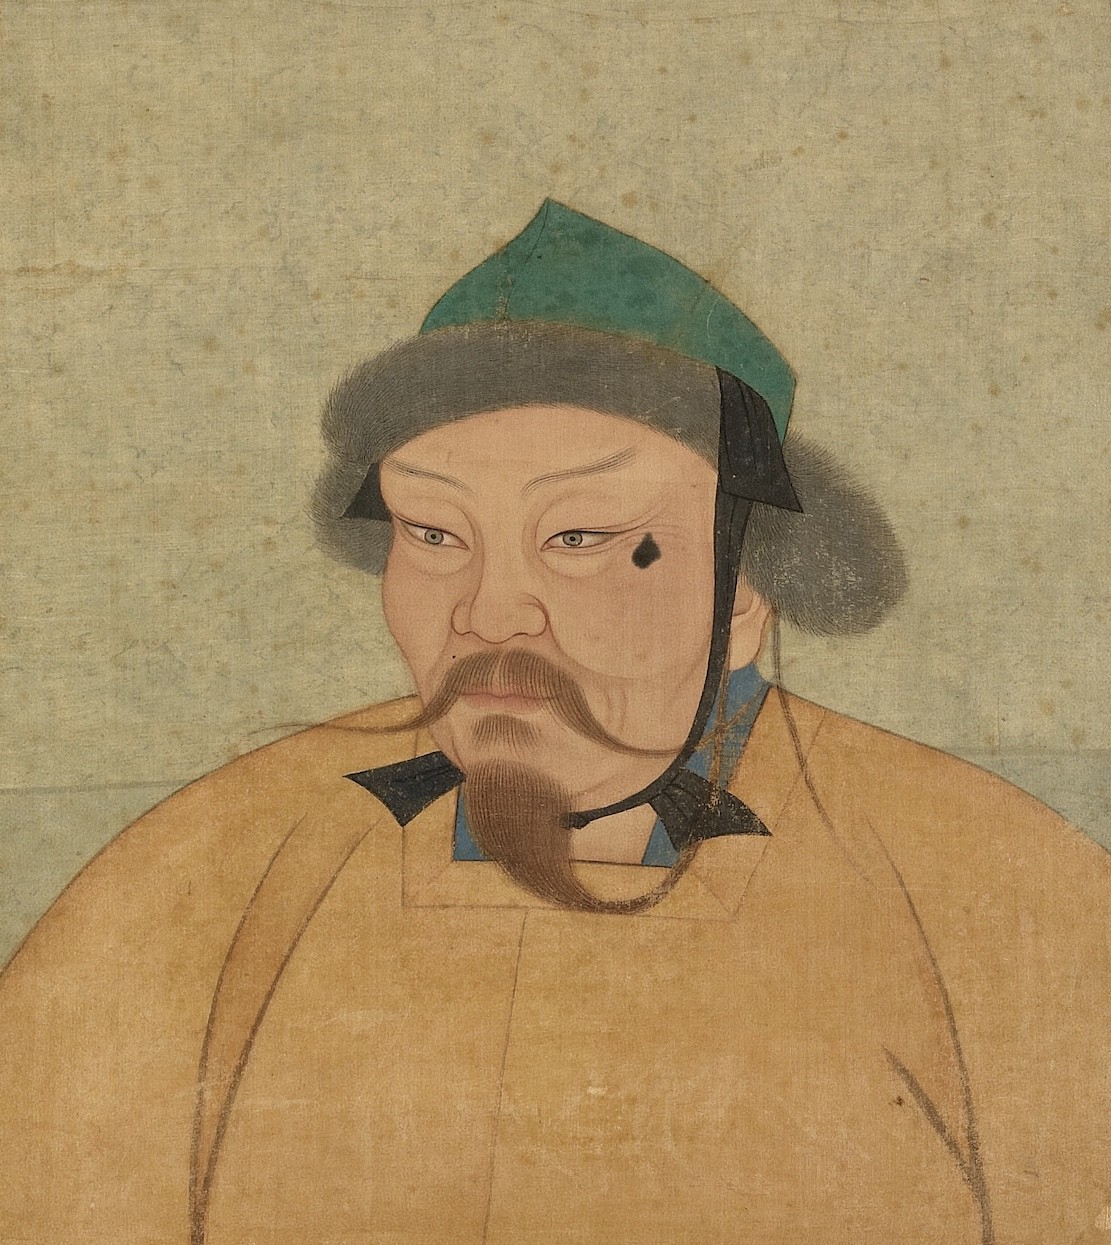 Ogedei Khan, son of Genghis Khan